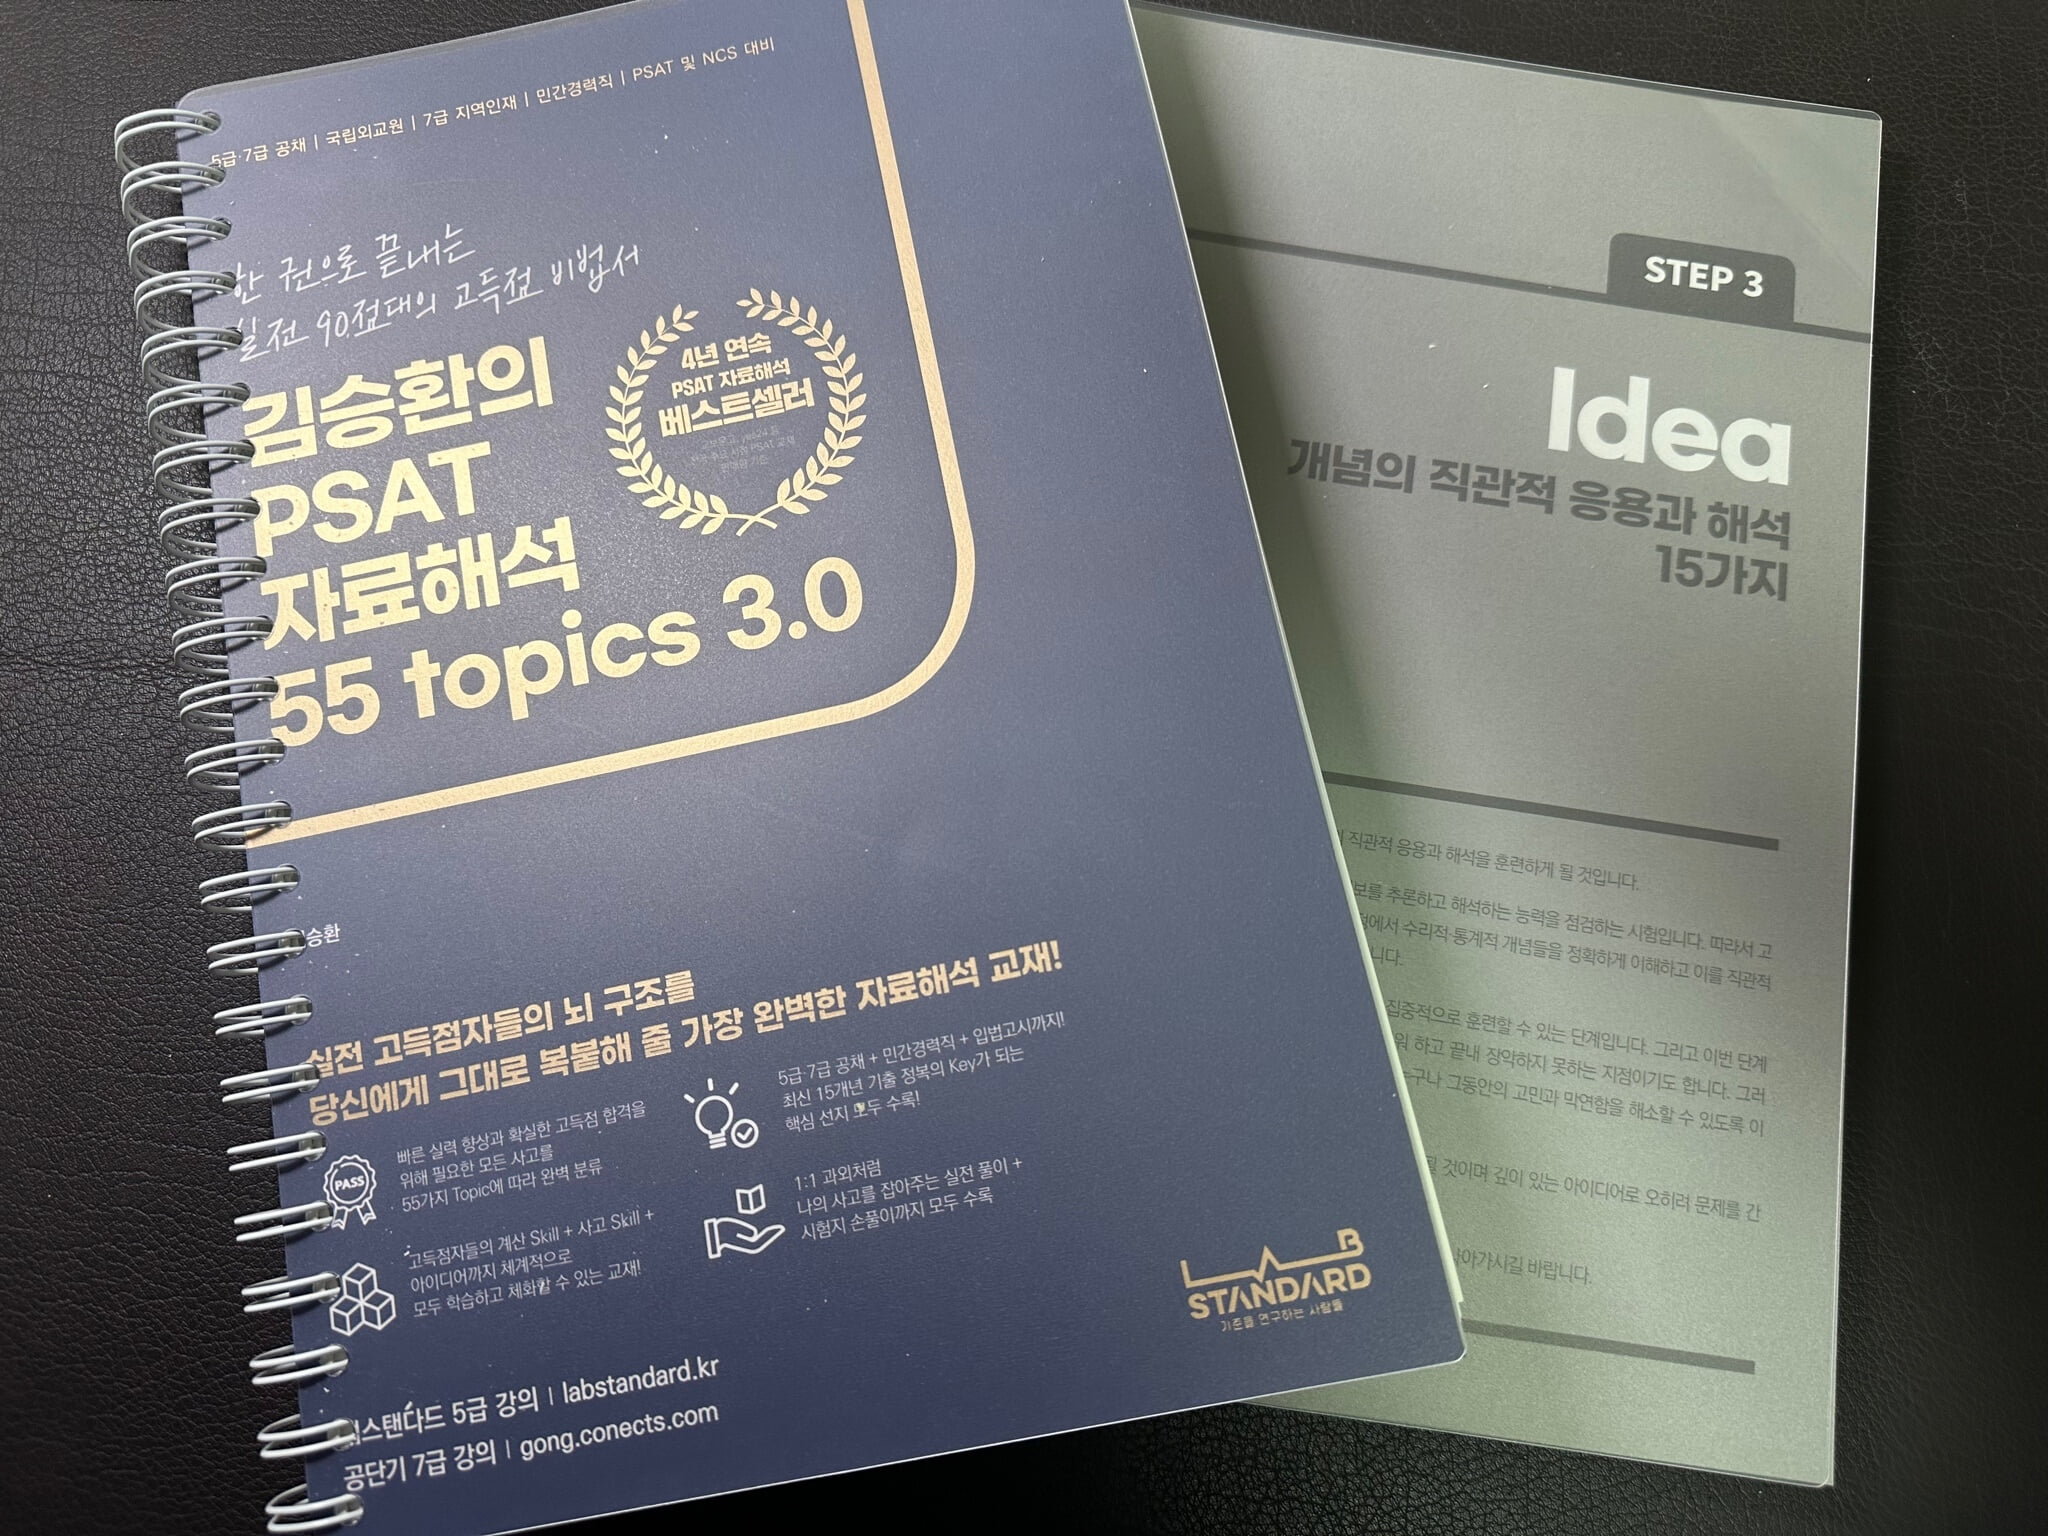 김승환의 PSAT 자료해석 55 Topics 3.0